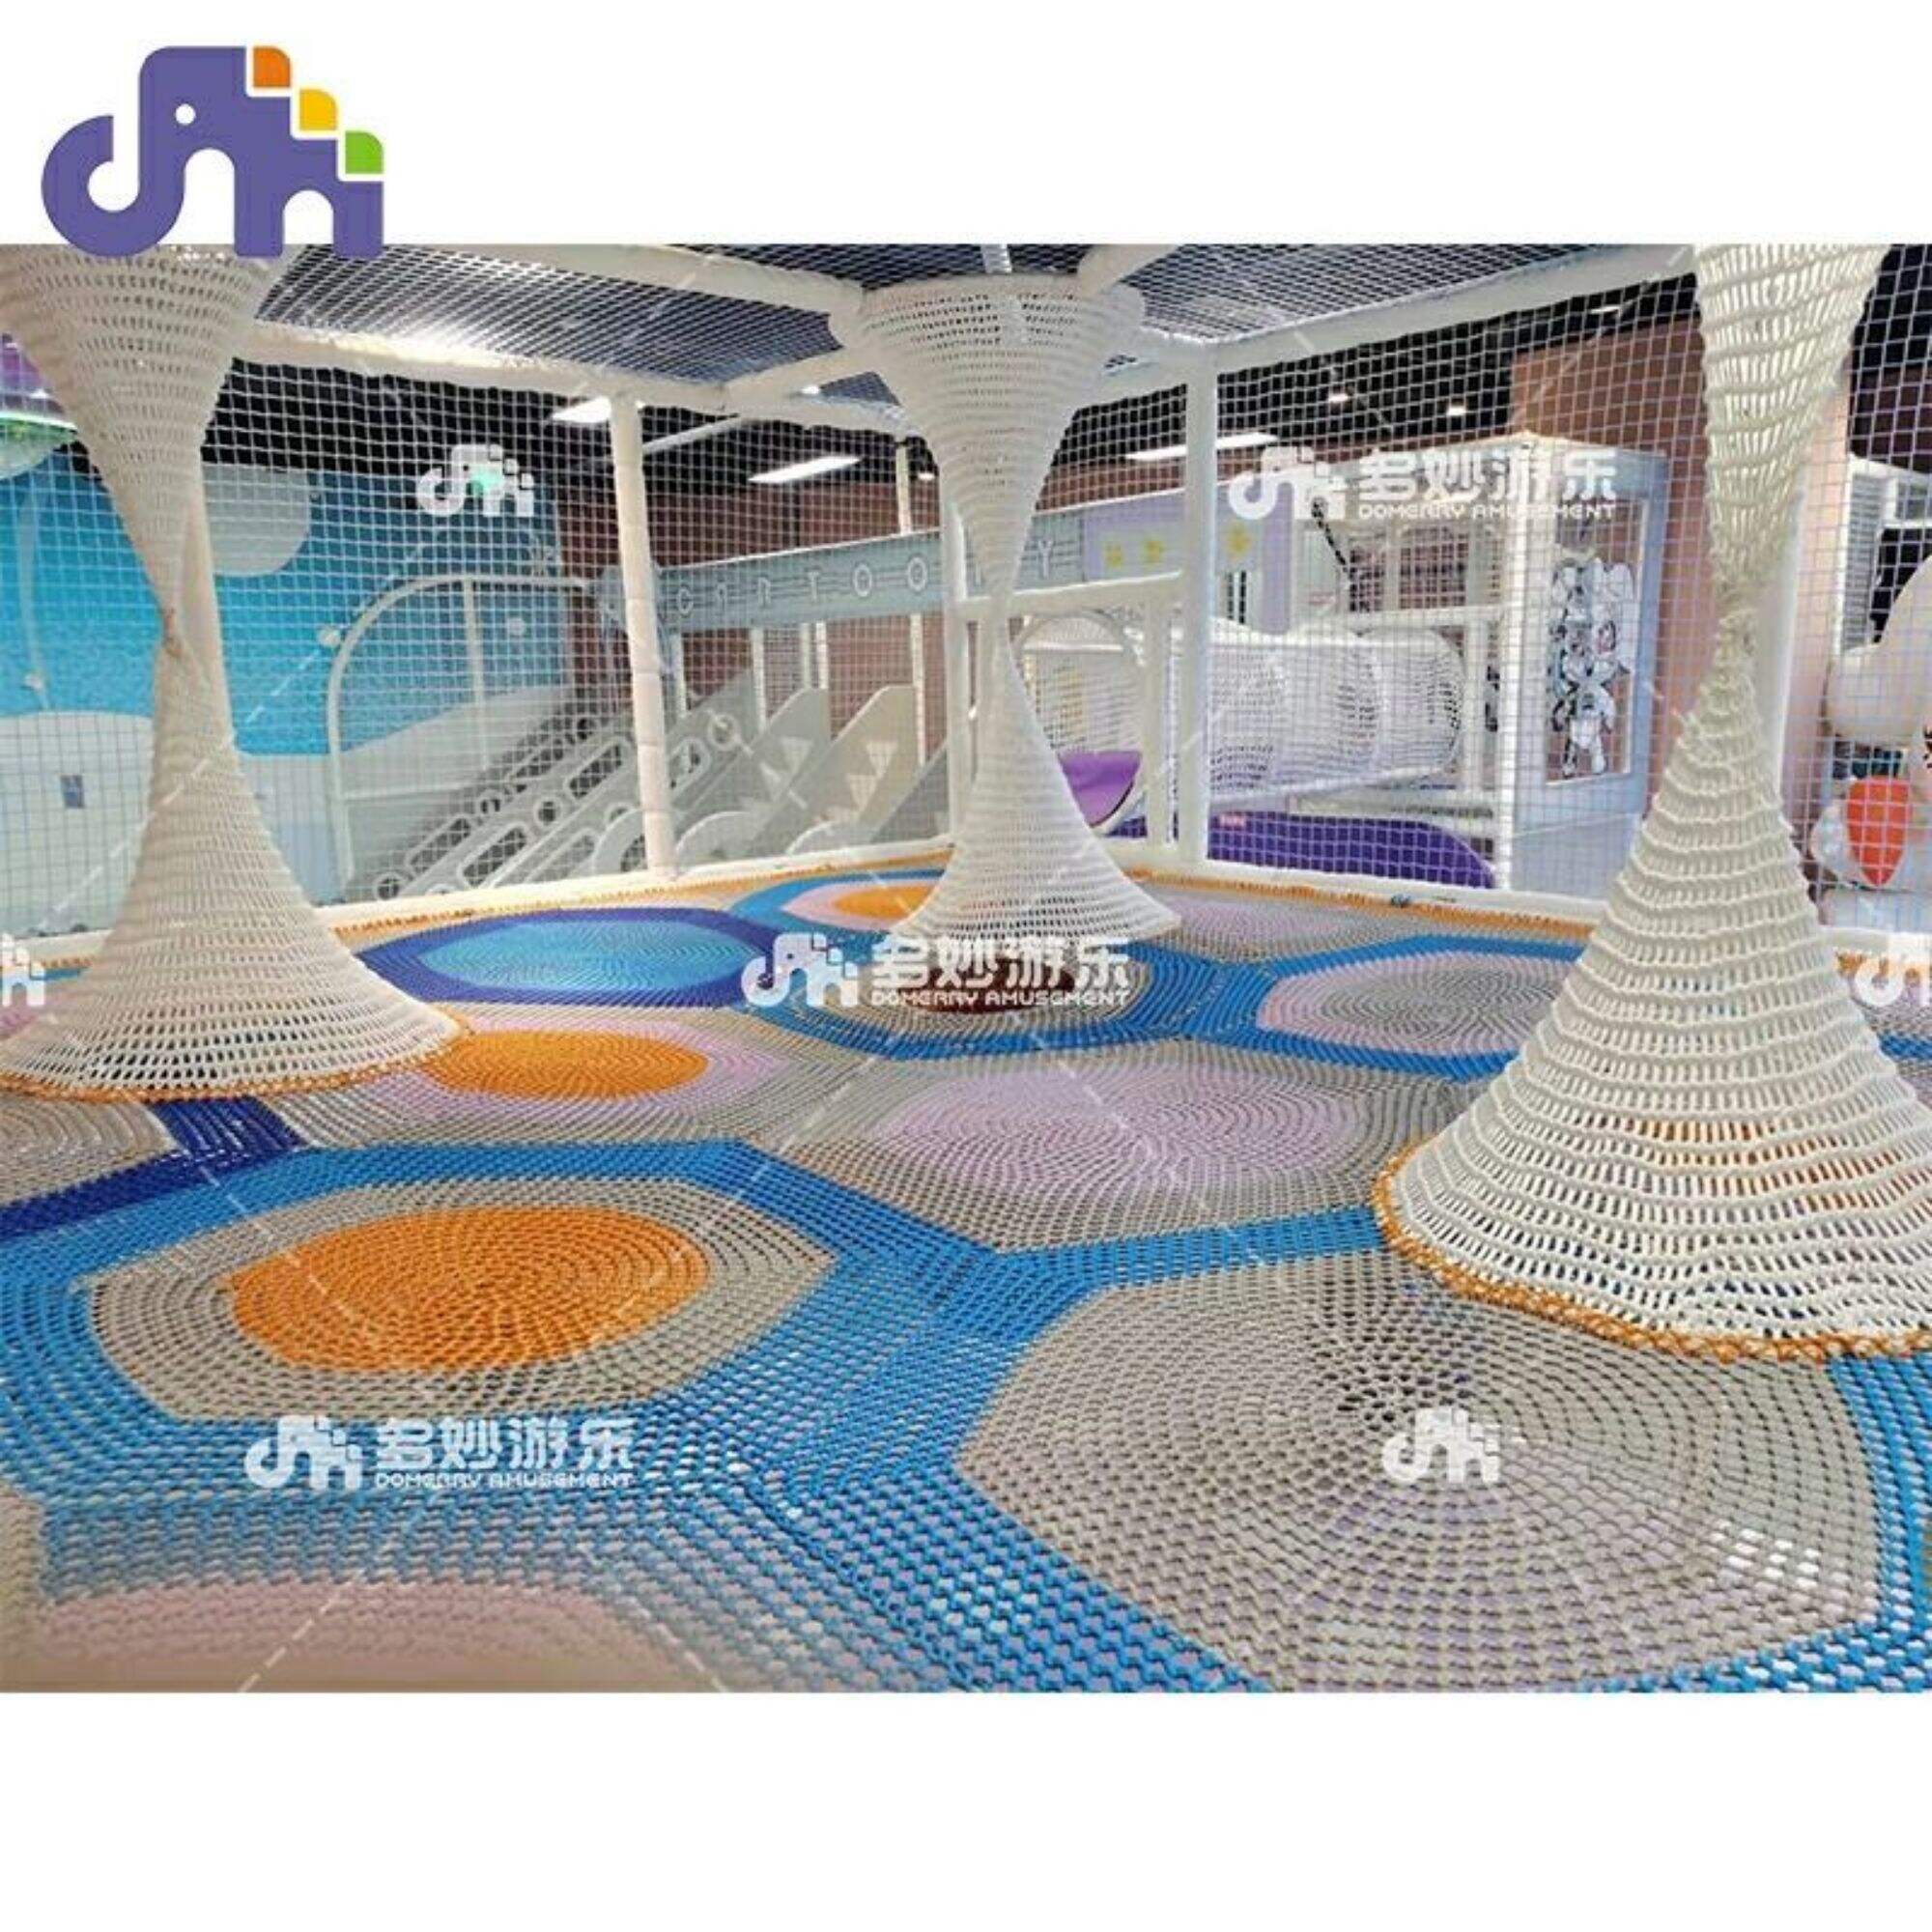 Kommerzielle Kinder-Fitnessgeräte. Weiche Nylonnetze für Vergnügungspark-Spielplätze, Jungle Gym mit strapazierfähigem und weichem Material